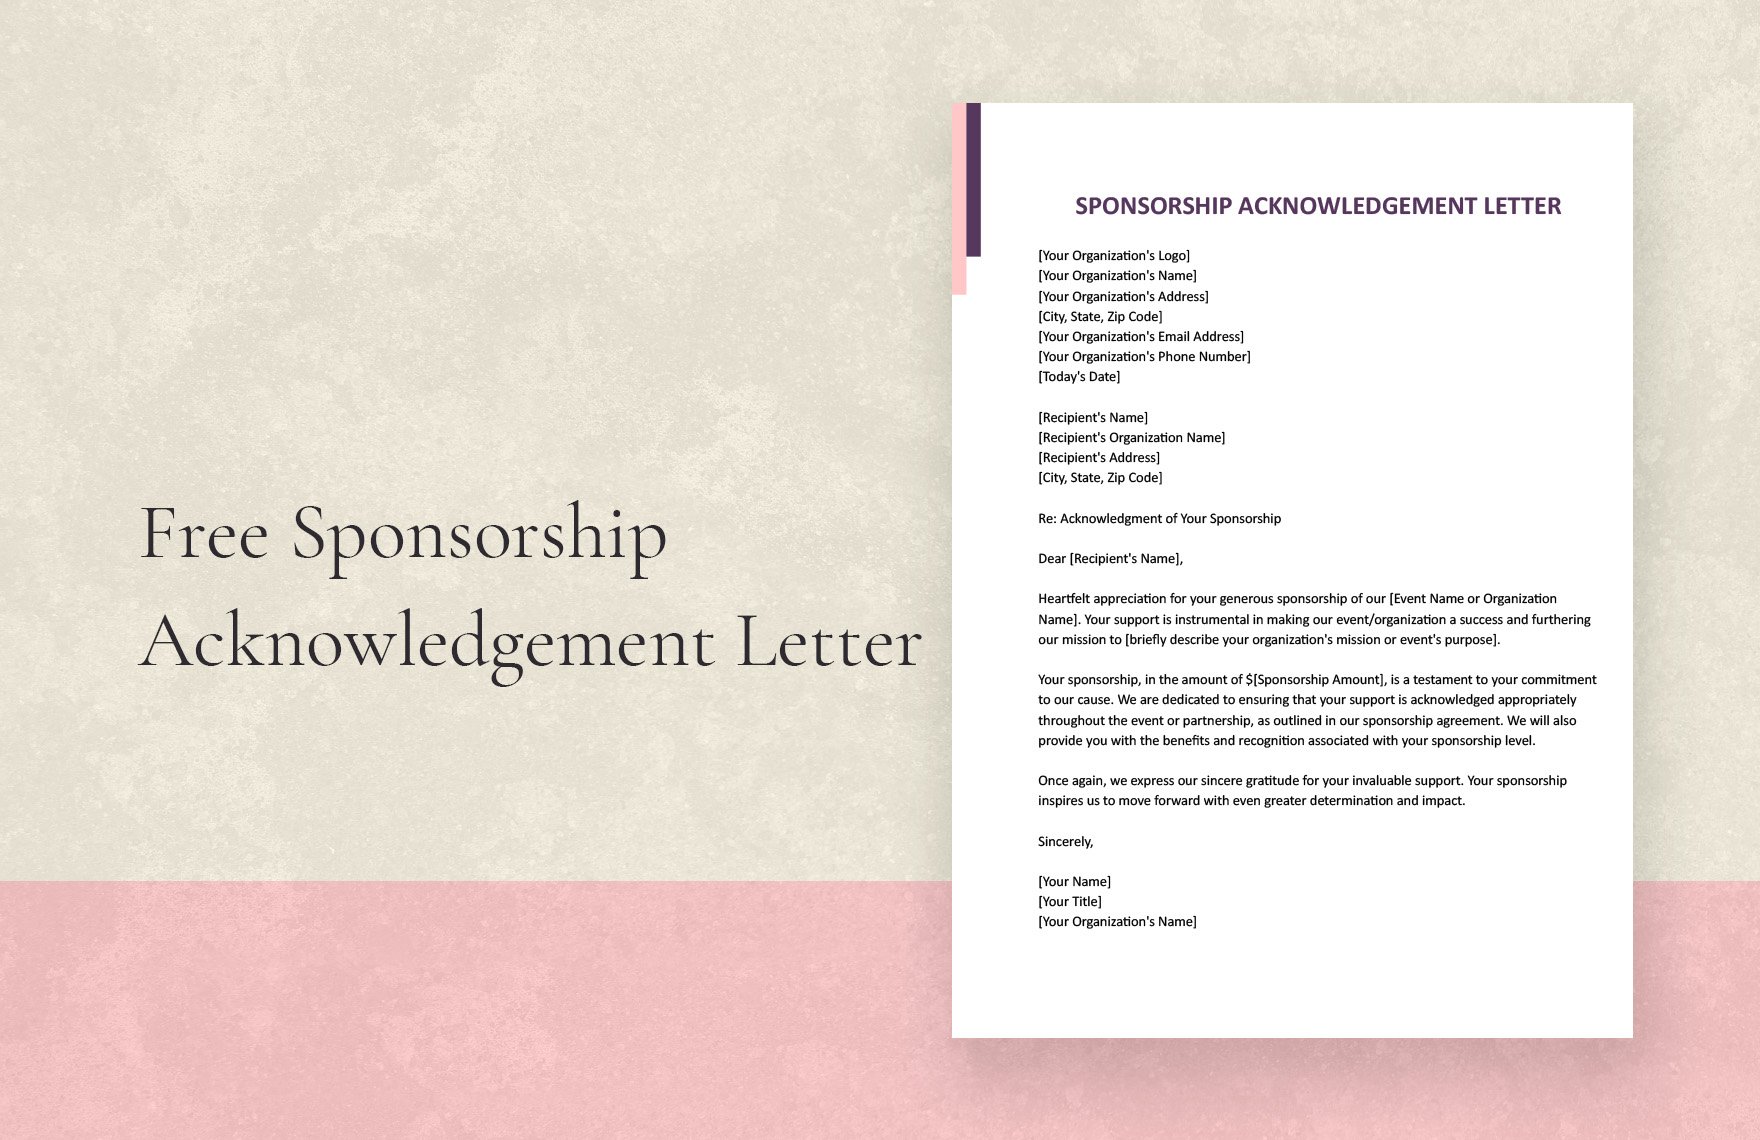 Sponsorship Acknowledgement Letter